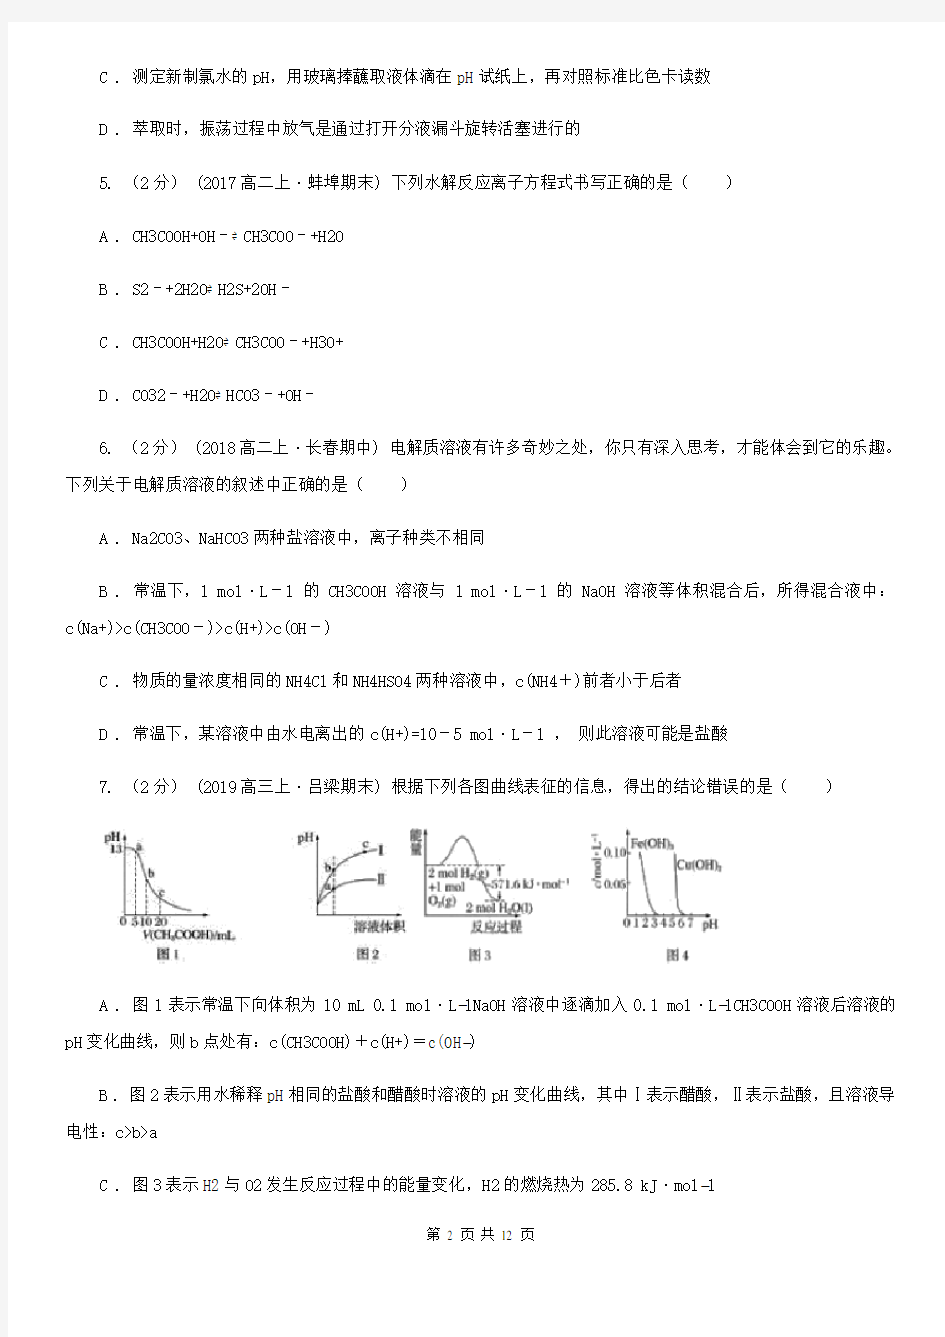 浙江省2020-2021年高二上学期月考化学试卷(12月份)